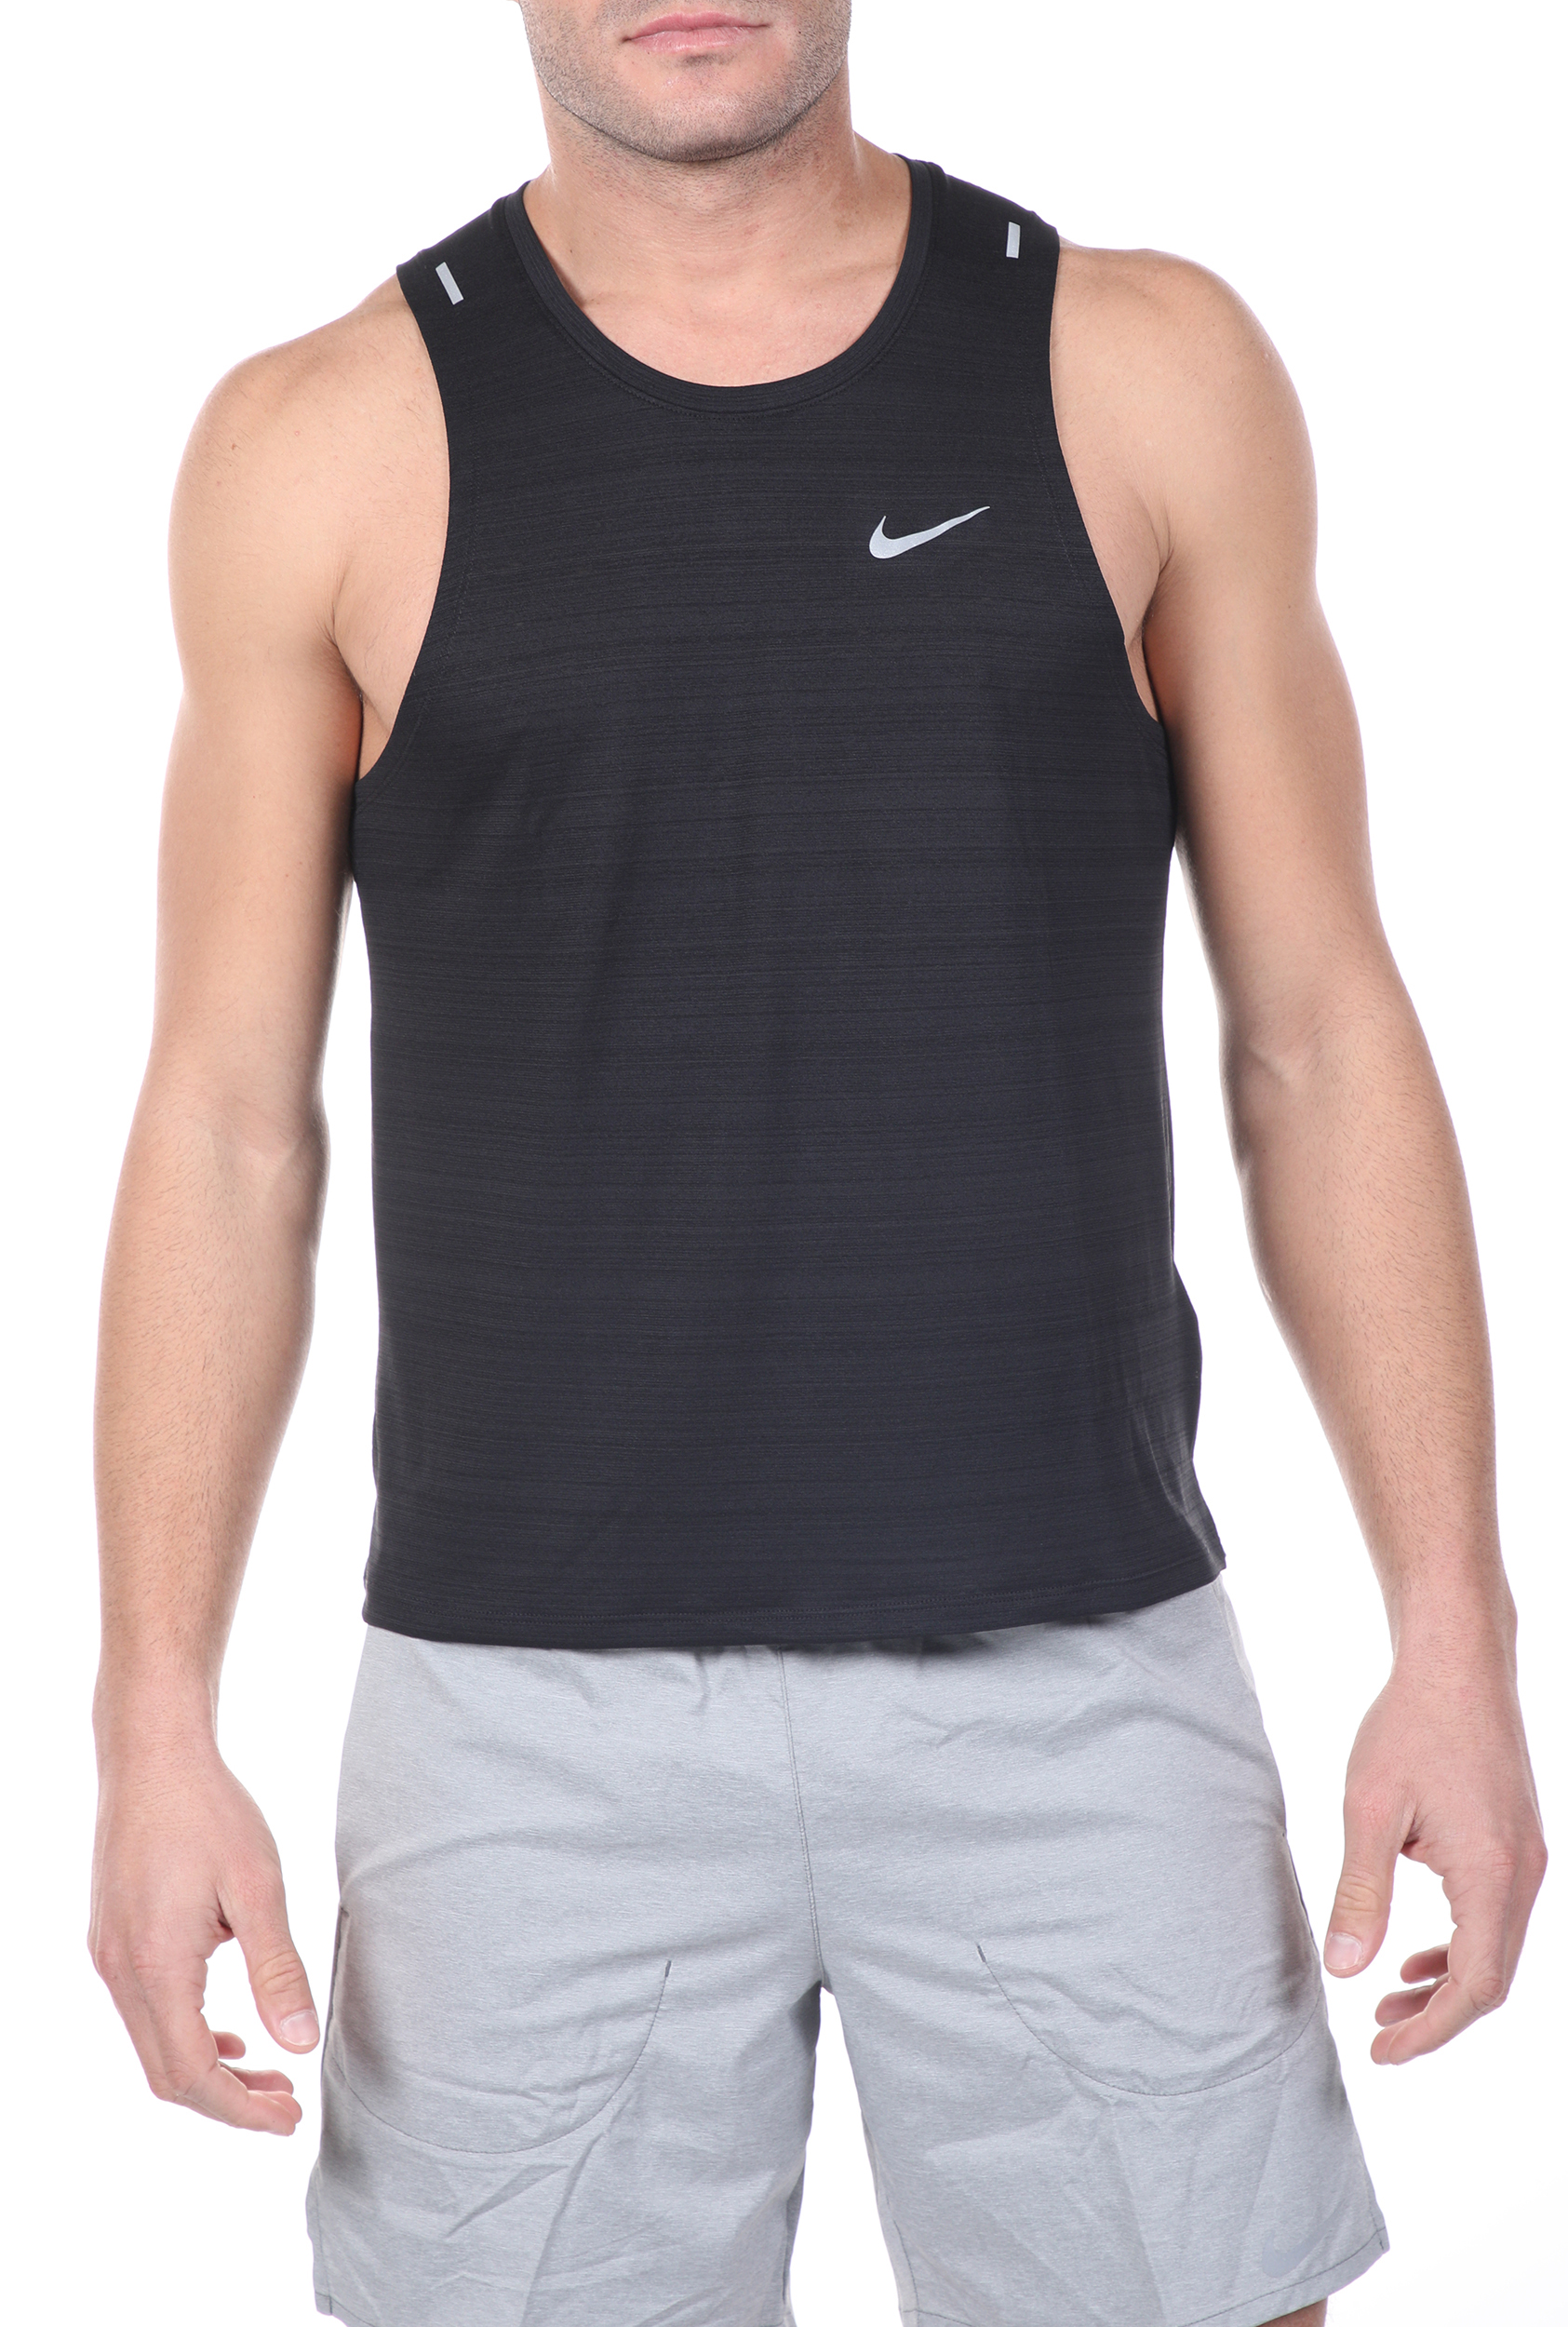 Ανδρικά/Ρούχα/Αθλητικά/T-shirt NIKE - Ανδρική μπλούζα NIKE DF MILER TANK μαύρη